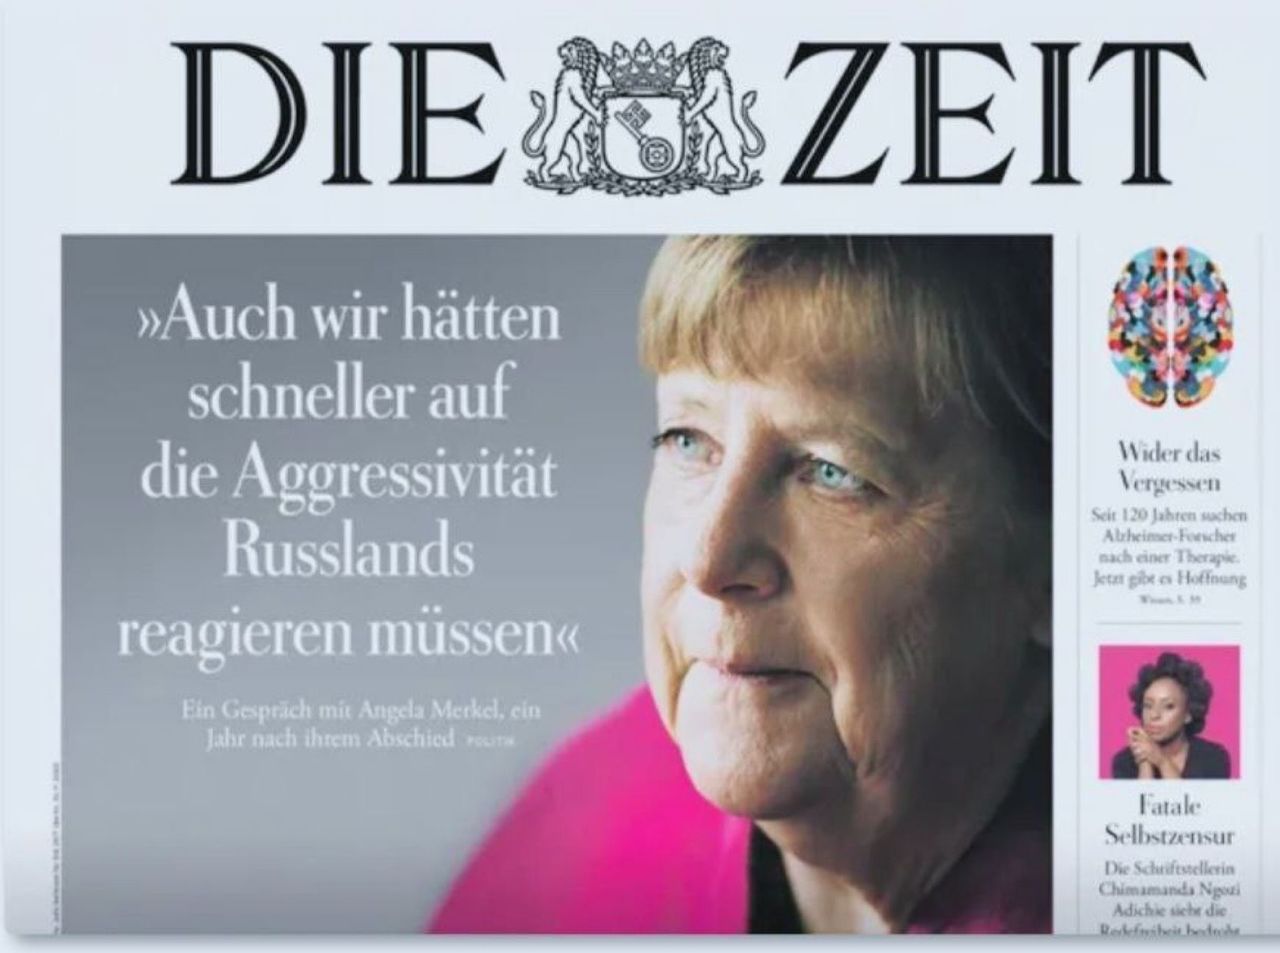 Former German Chancellor Angela Merkel in an interview with the German newspaper Die Zeit admits: